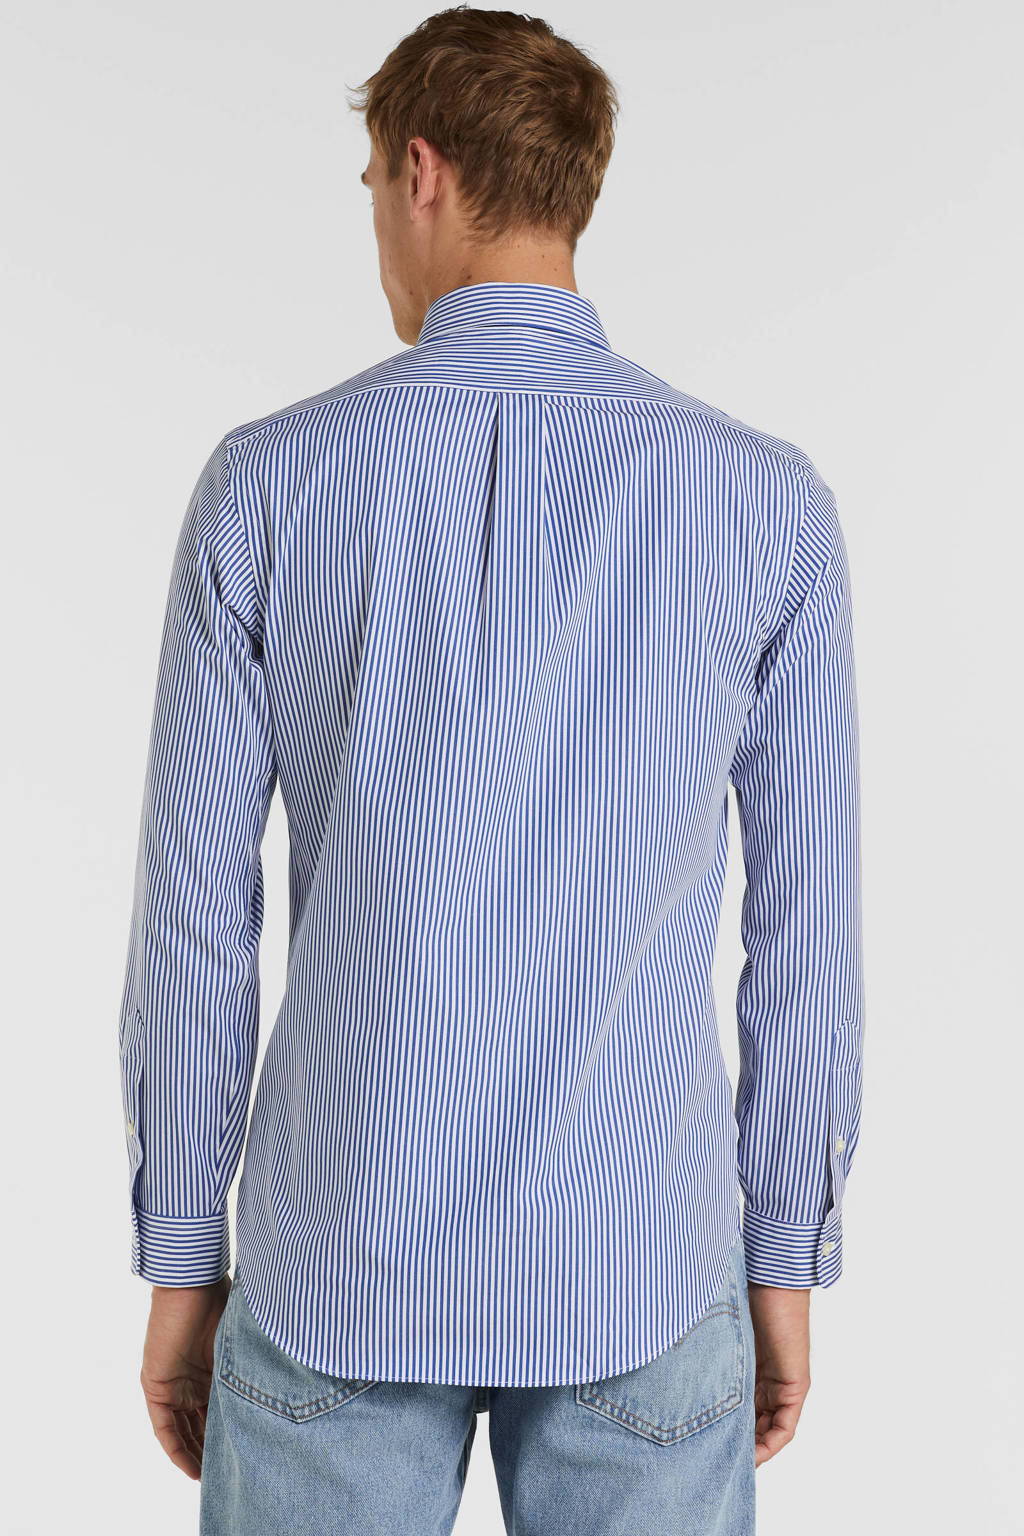 bijvoeglijk naamwoord Bladeren verzamelen pond POLO Ralph Lauren gestreept regular fit overhemd blue/white | wehkamp